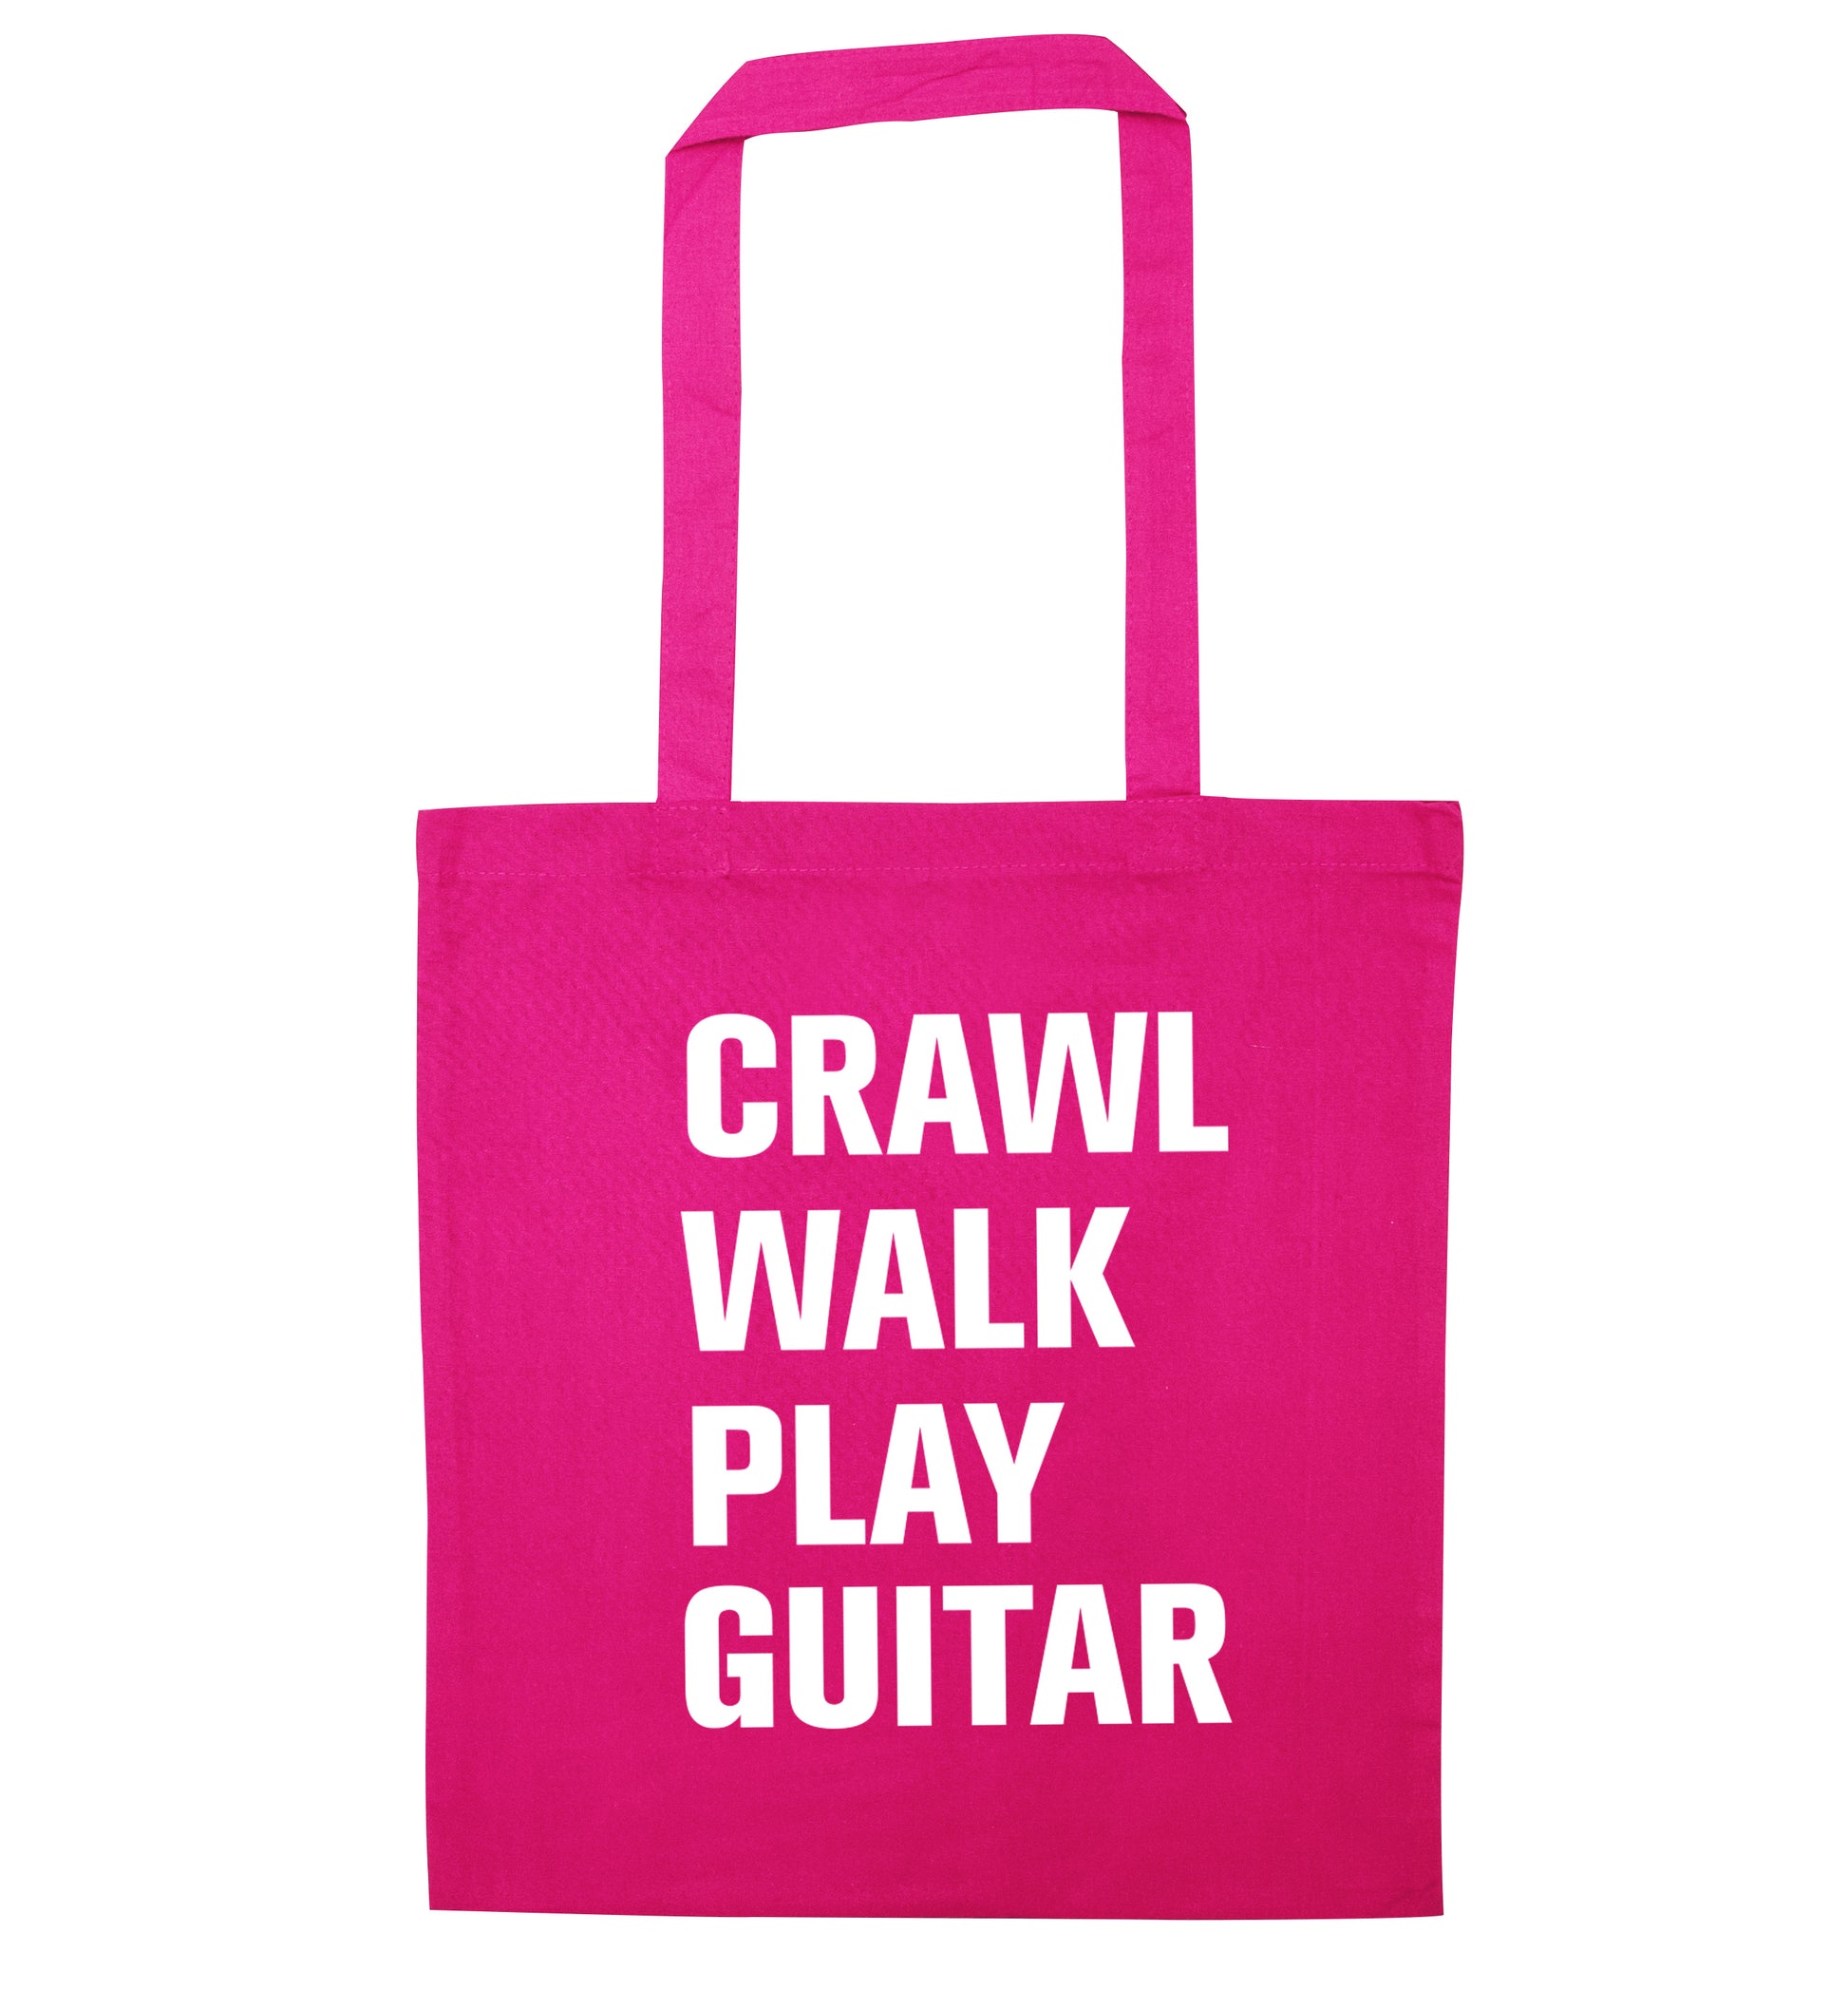 Crawl walk play guitar pink tote bag